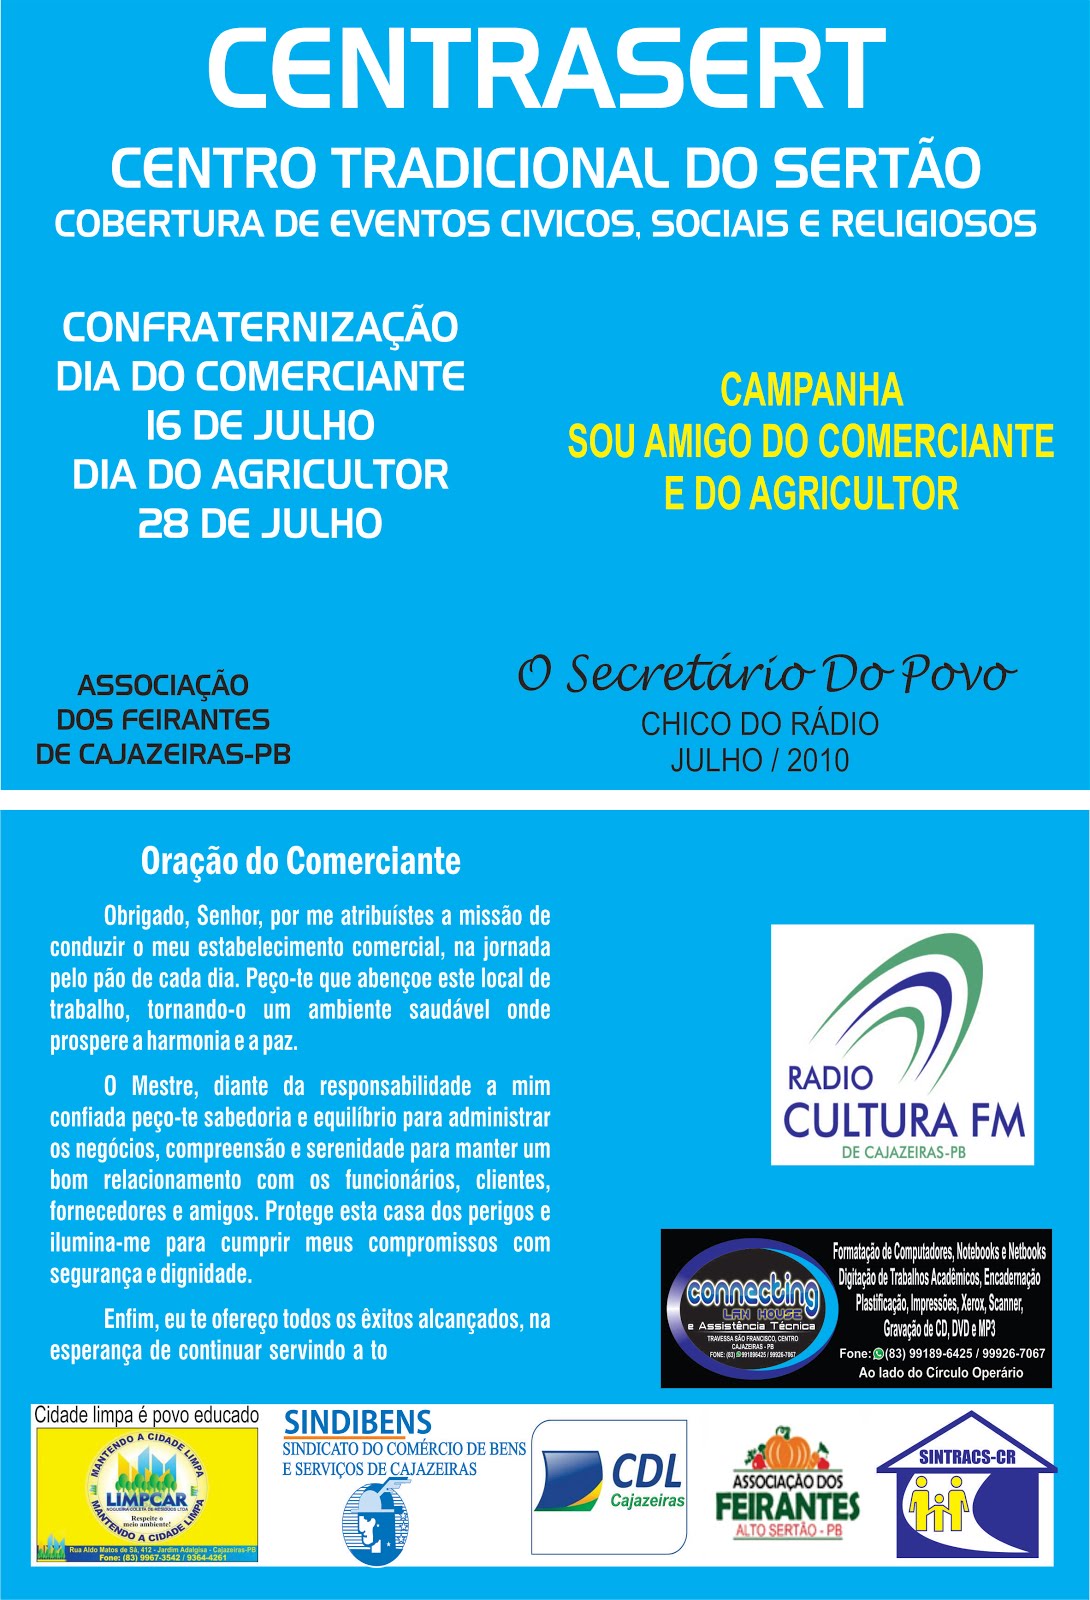 BLOG  CENTRASERT  PARCEIRO  DO BLOG NET RADIO CULTURA FM  CAJAZEIRAS PB